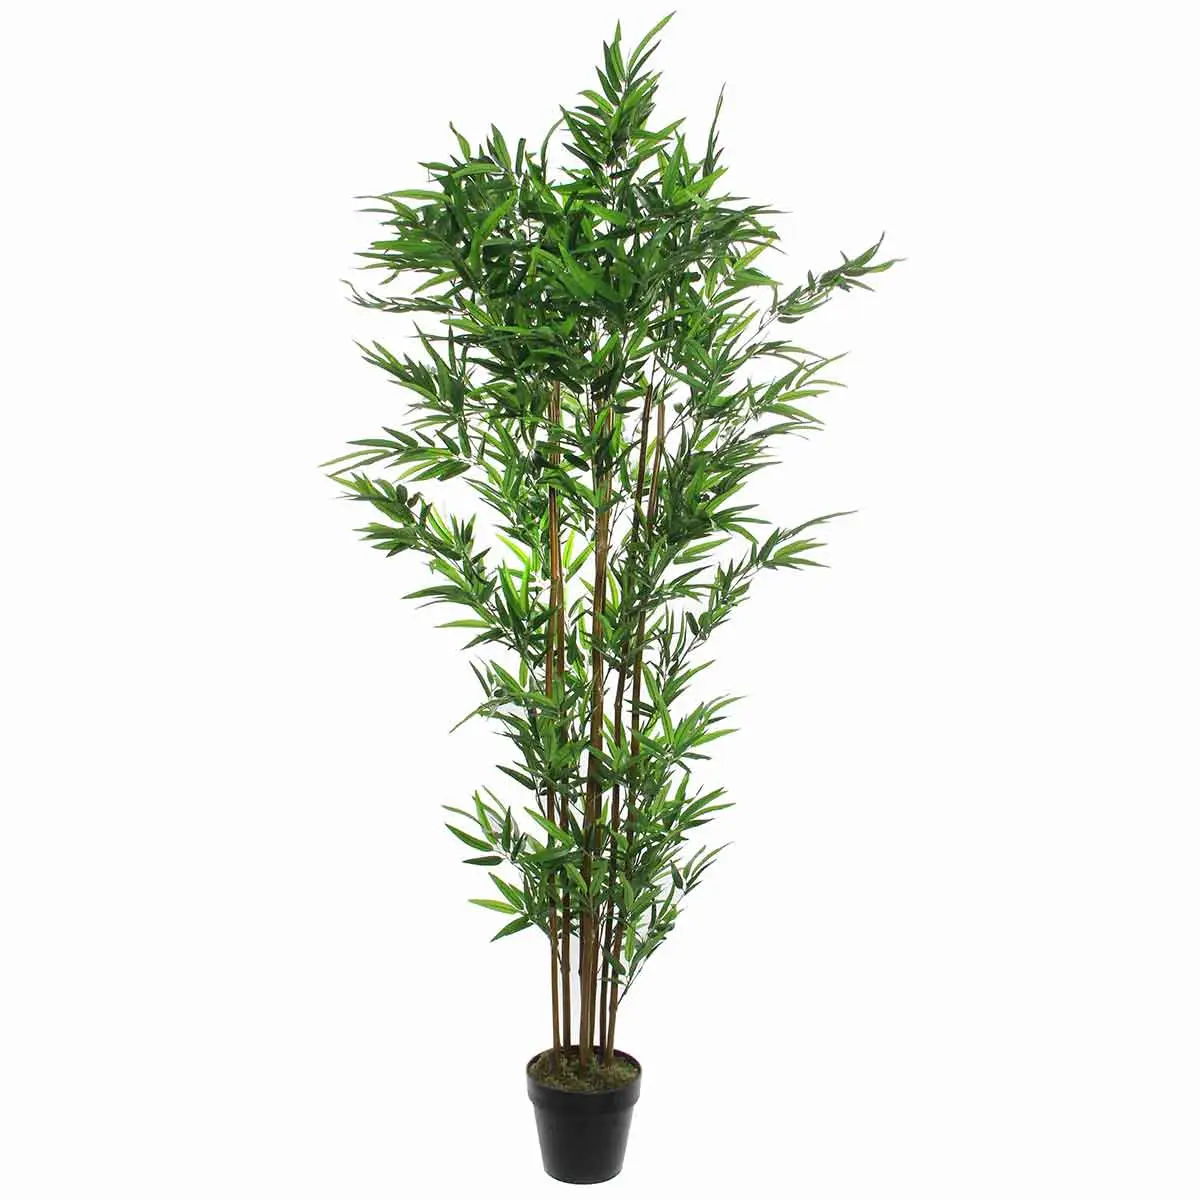 K眉nstliche Pflanze Bamboe